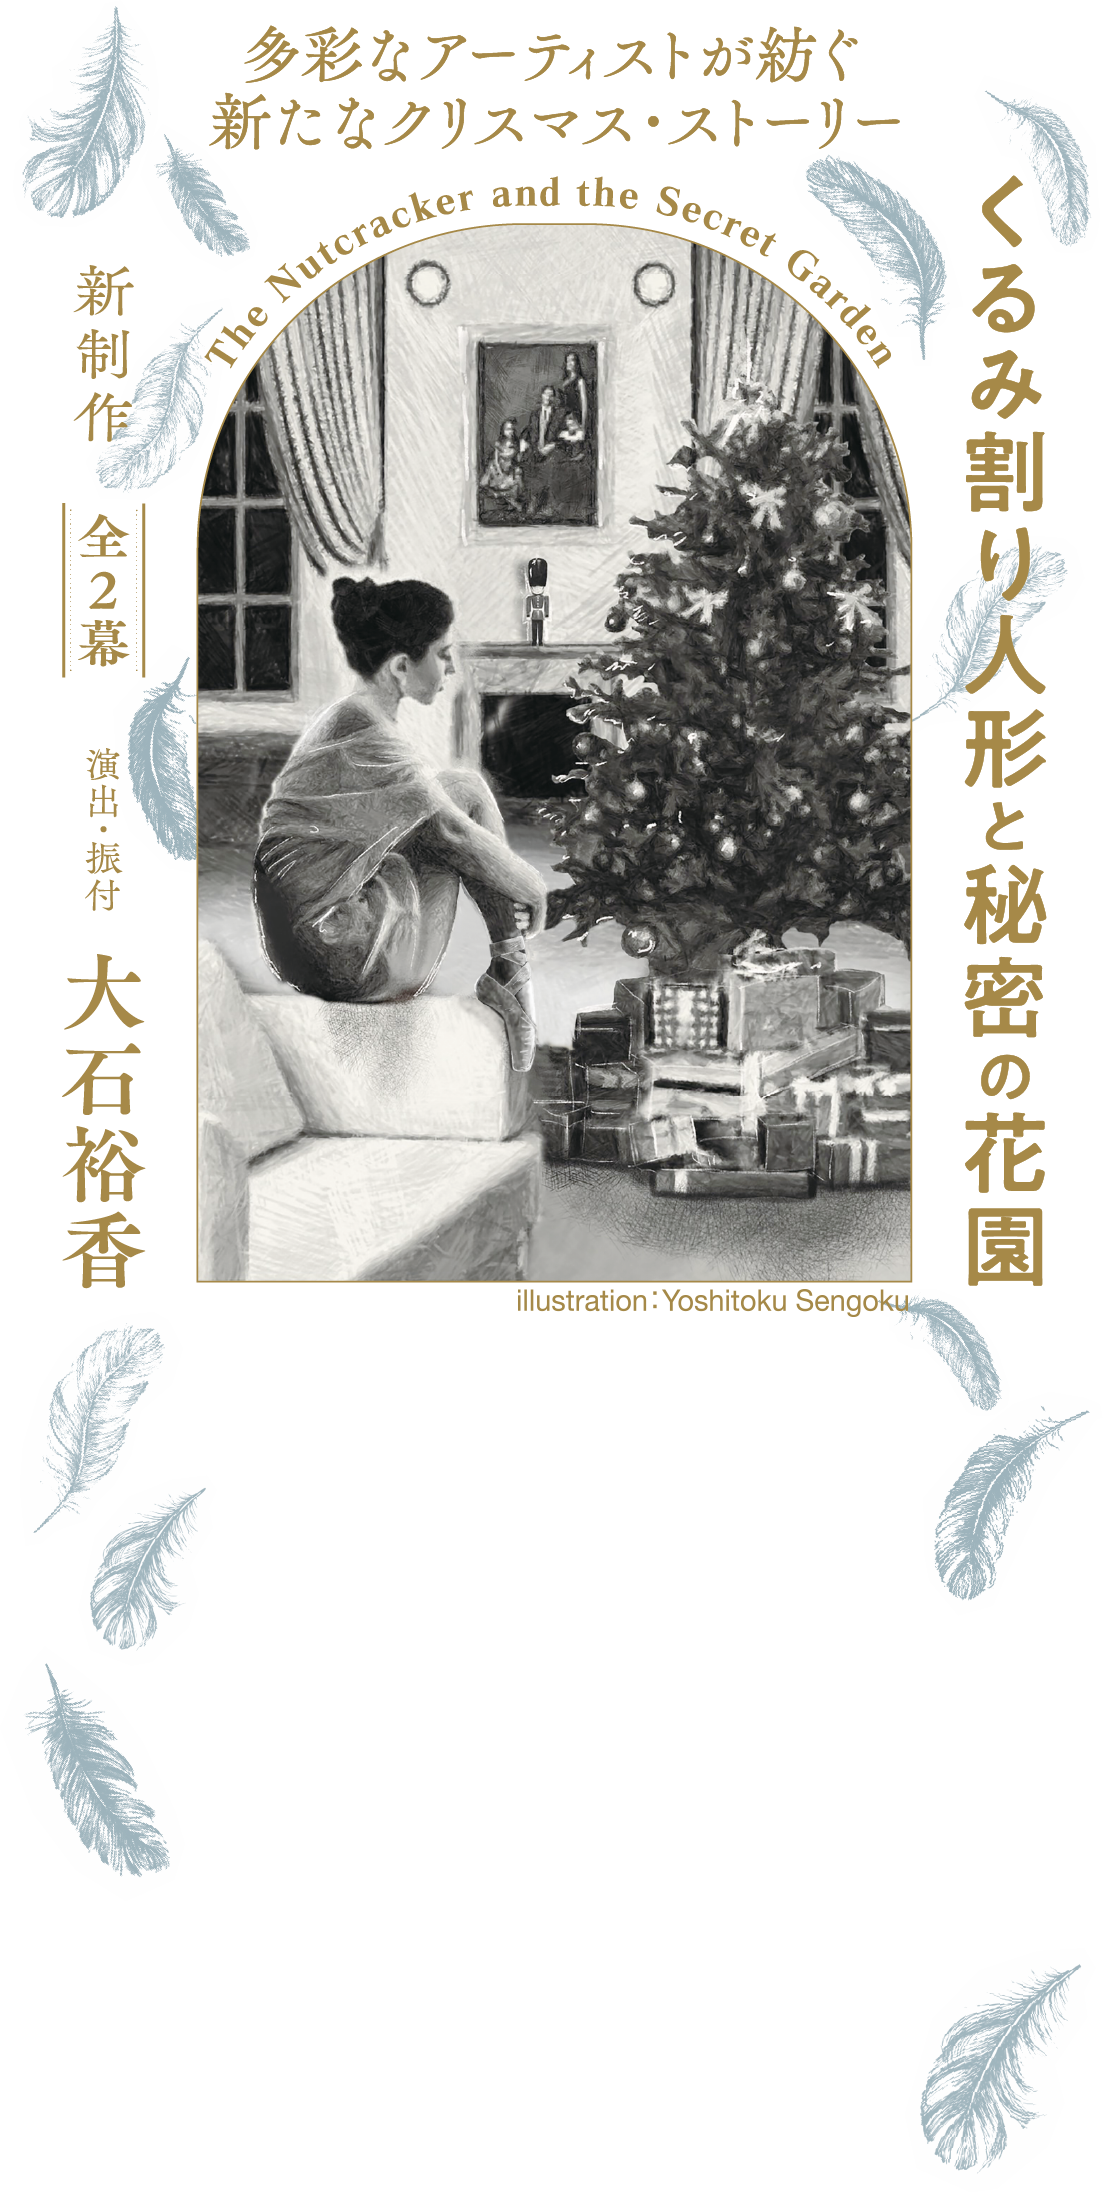 くるみ割り人形と秘密の花園 -2022年12月17日・18日 神戸文化センター ...